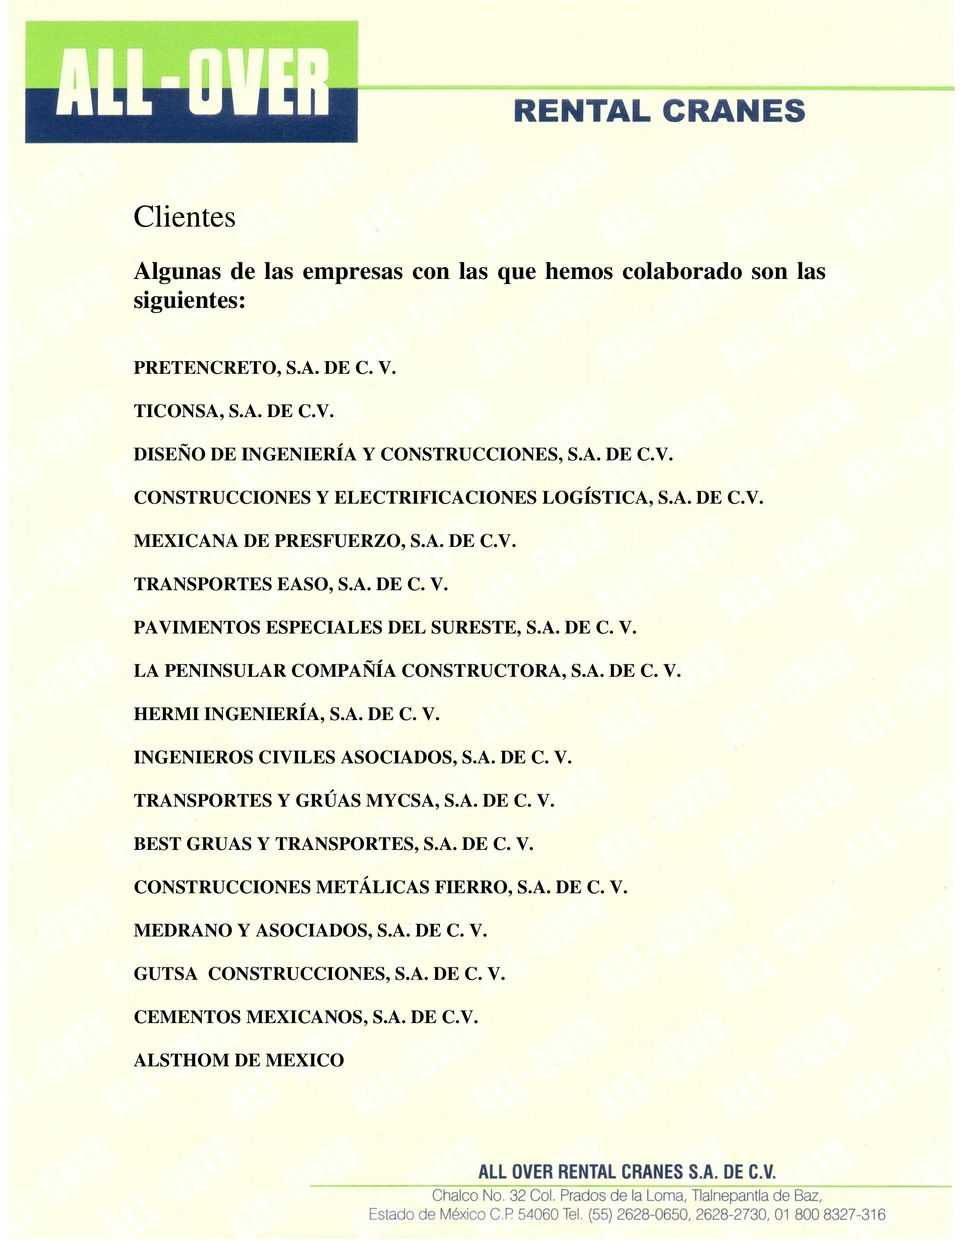 A. DE C. V. INGENIEROS CIVILES ASOCIADOS, S.A. DE C. V. TRANSPORTES Y GRÚAS MYCSA, S.A. DE C. V. BEST GRUAS Y TRANSPORTES, S.A. DE C. V. CONSTRUCCIONES METÁLICAS FIERRO, S.A. DE C. V. MEDRANO Y ASOCIADOS, S.